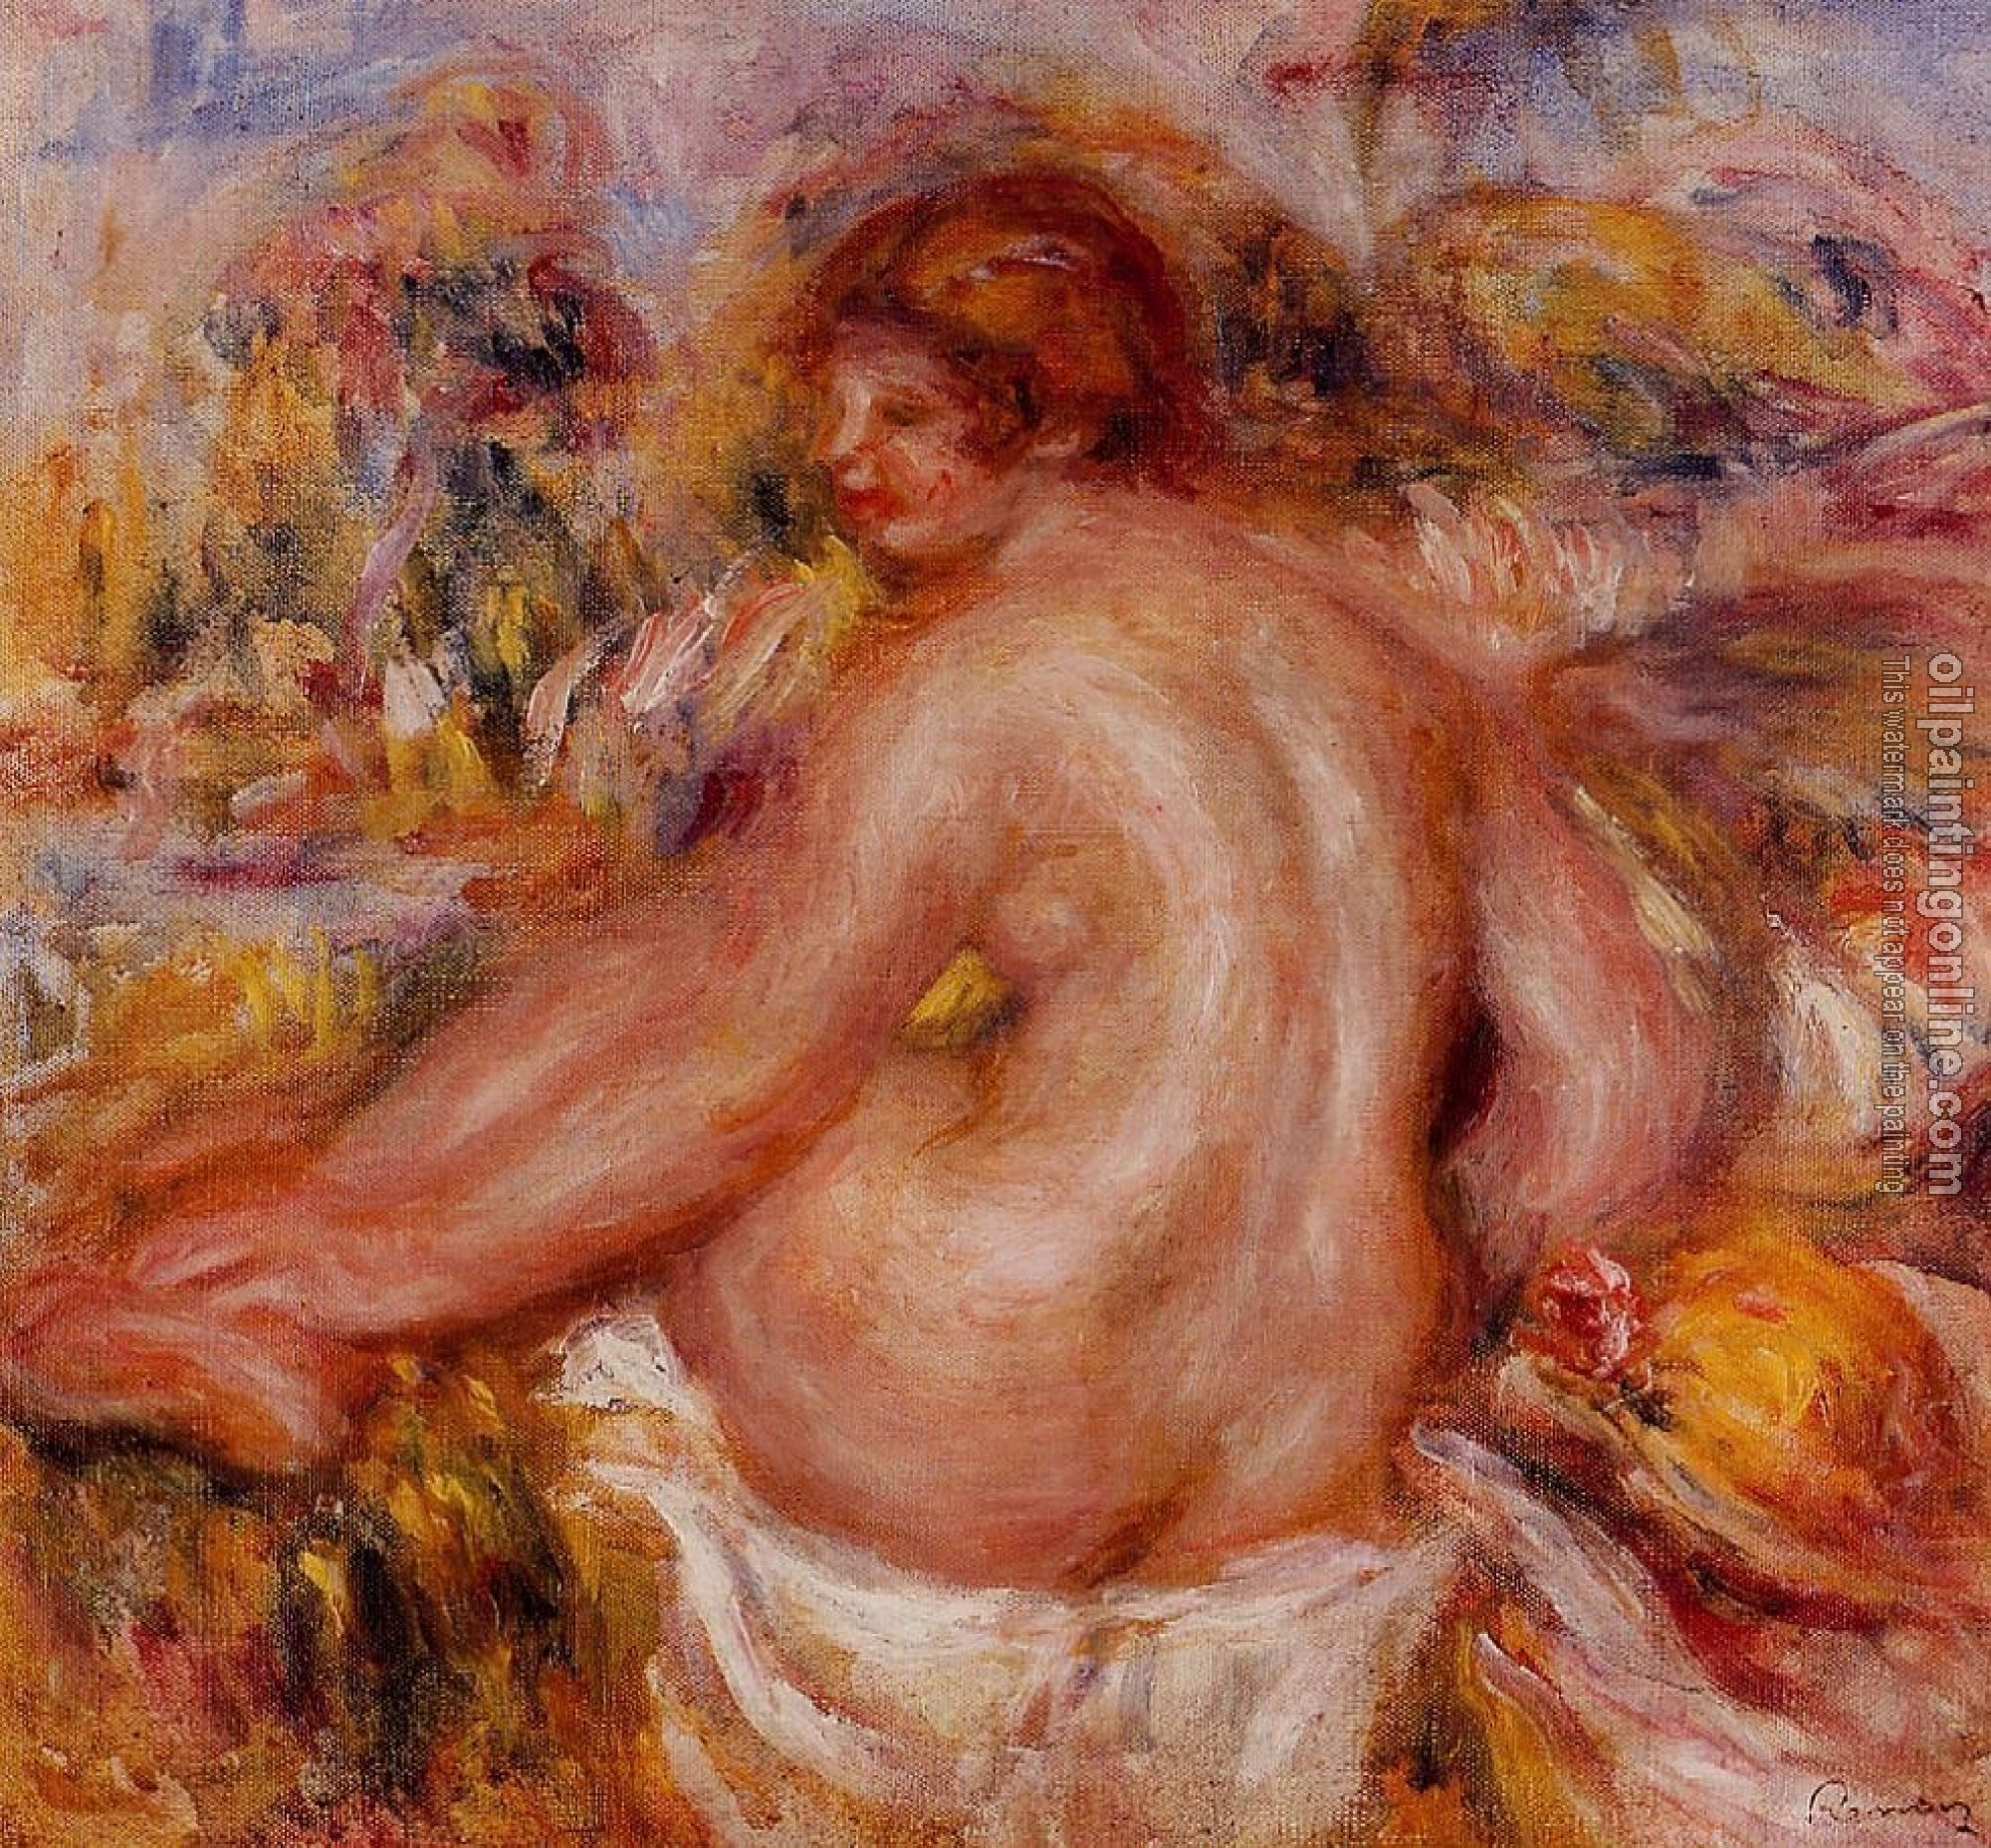 Renoir, Pierre Auguste - After Bathing Seated Female Nude